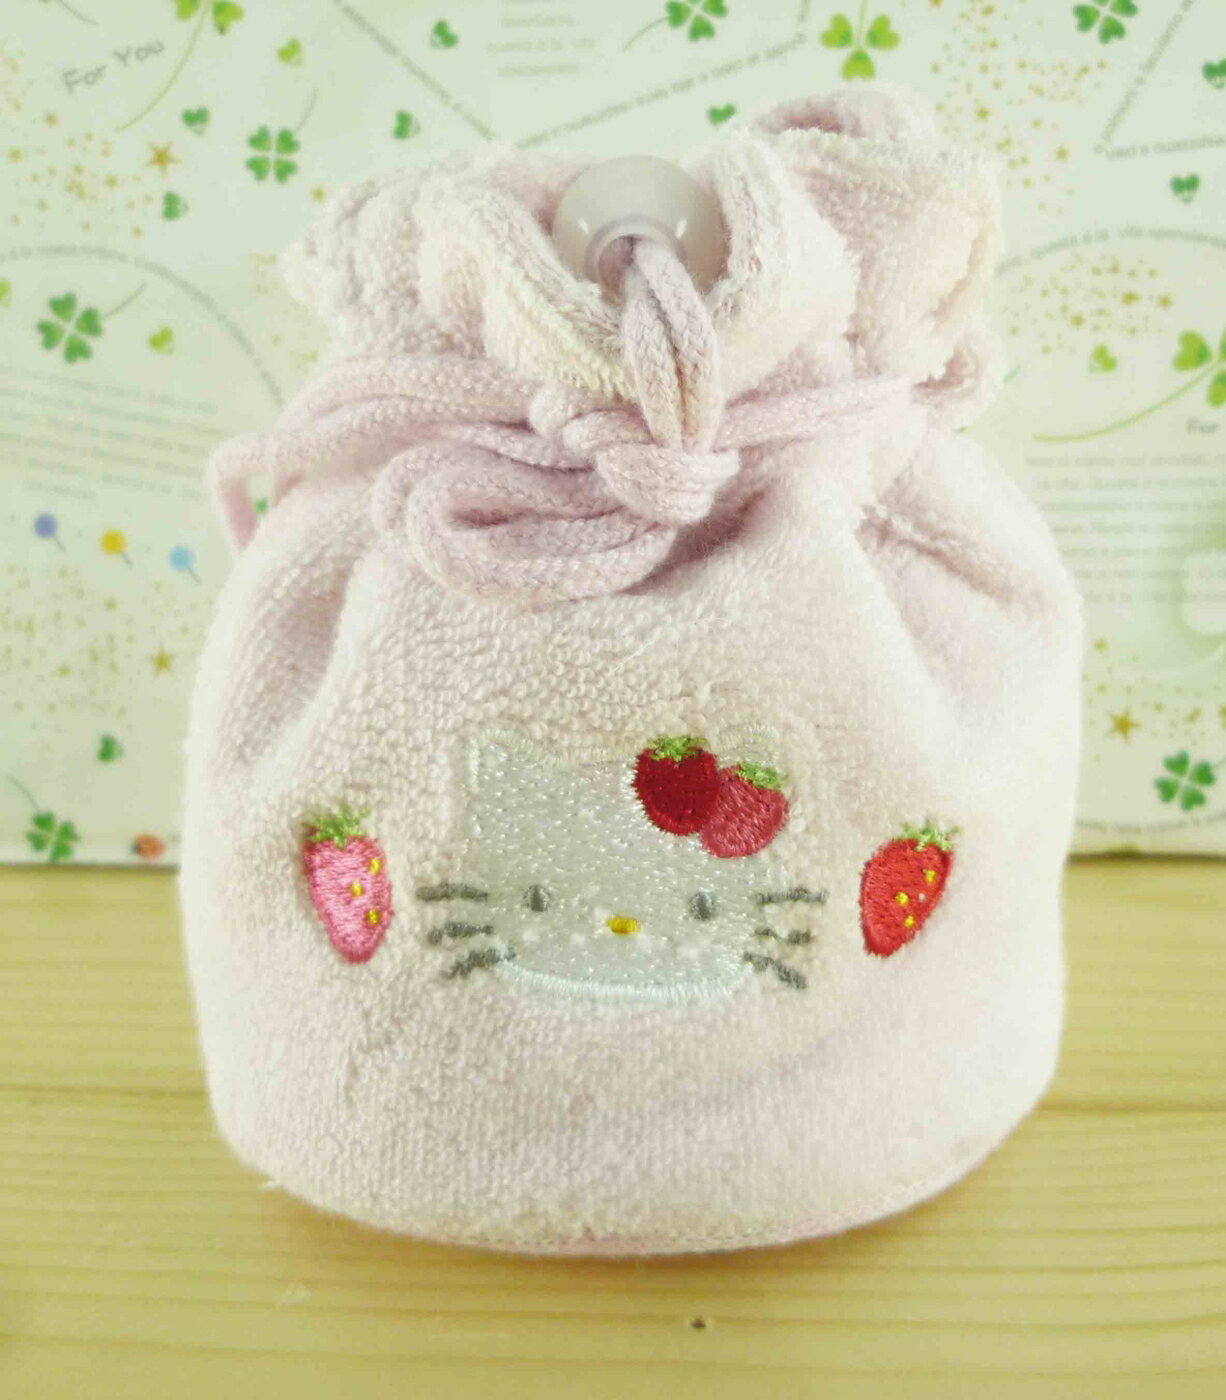 【震撼精品百貨】Hello Kitty 凱蒂貓-造型零錢包-粉草莓圖案 震撼日式精品百貨